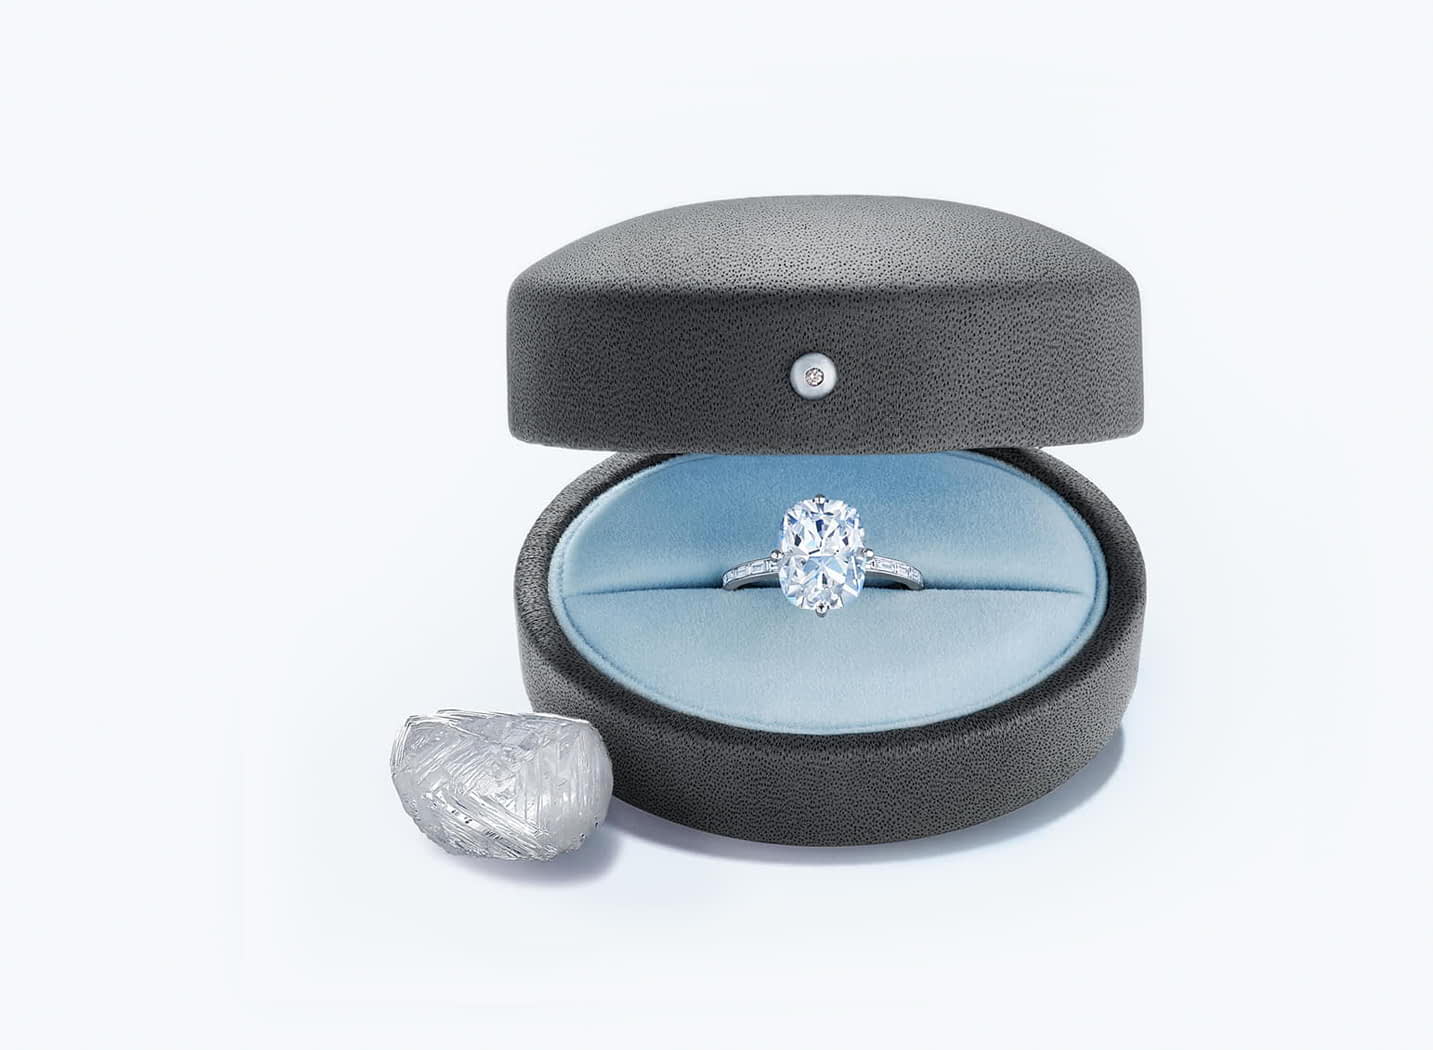 The Fred Leighton Round® Diamond - Kwiat